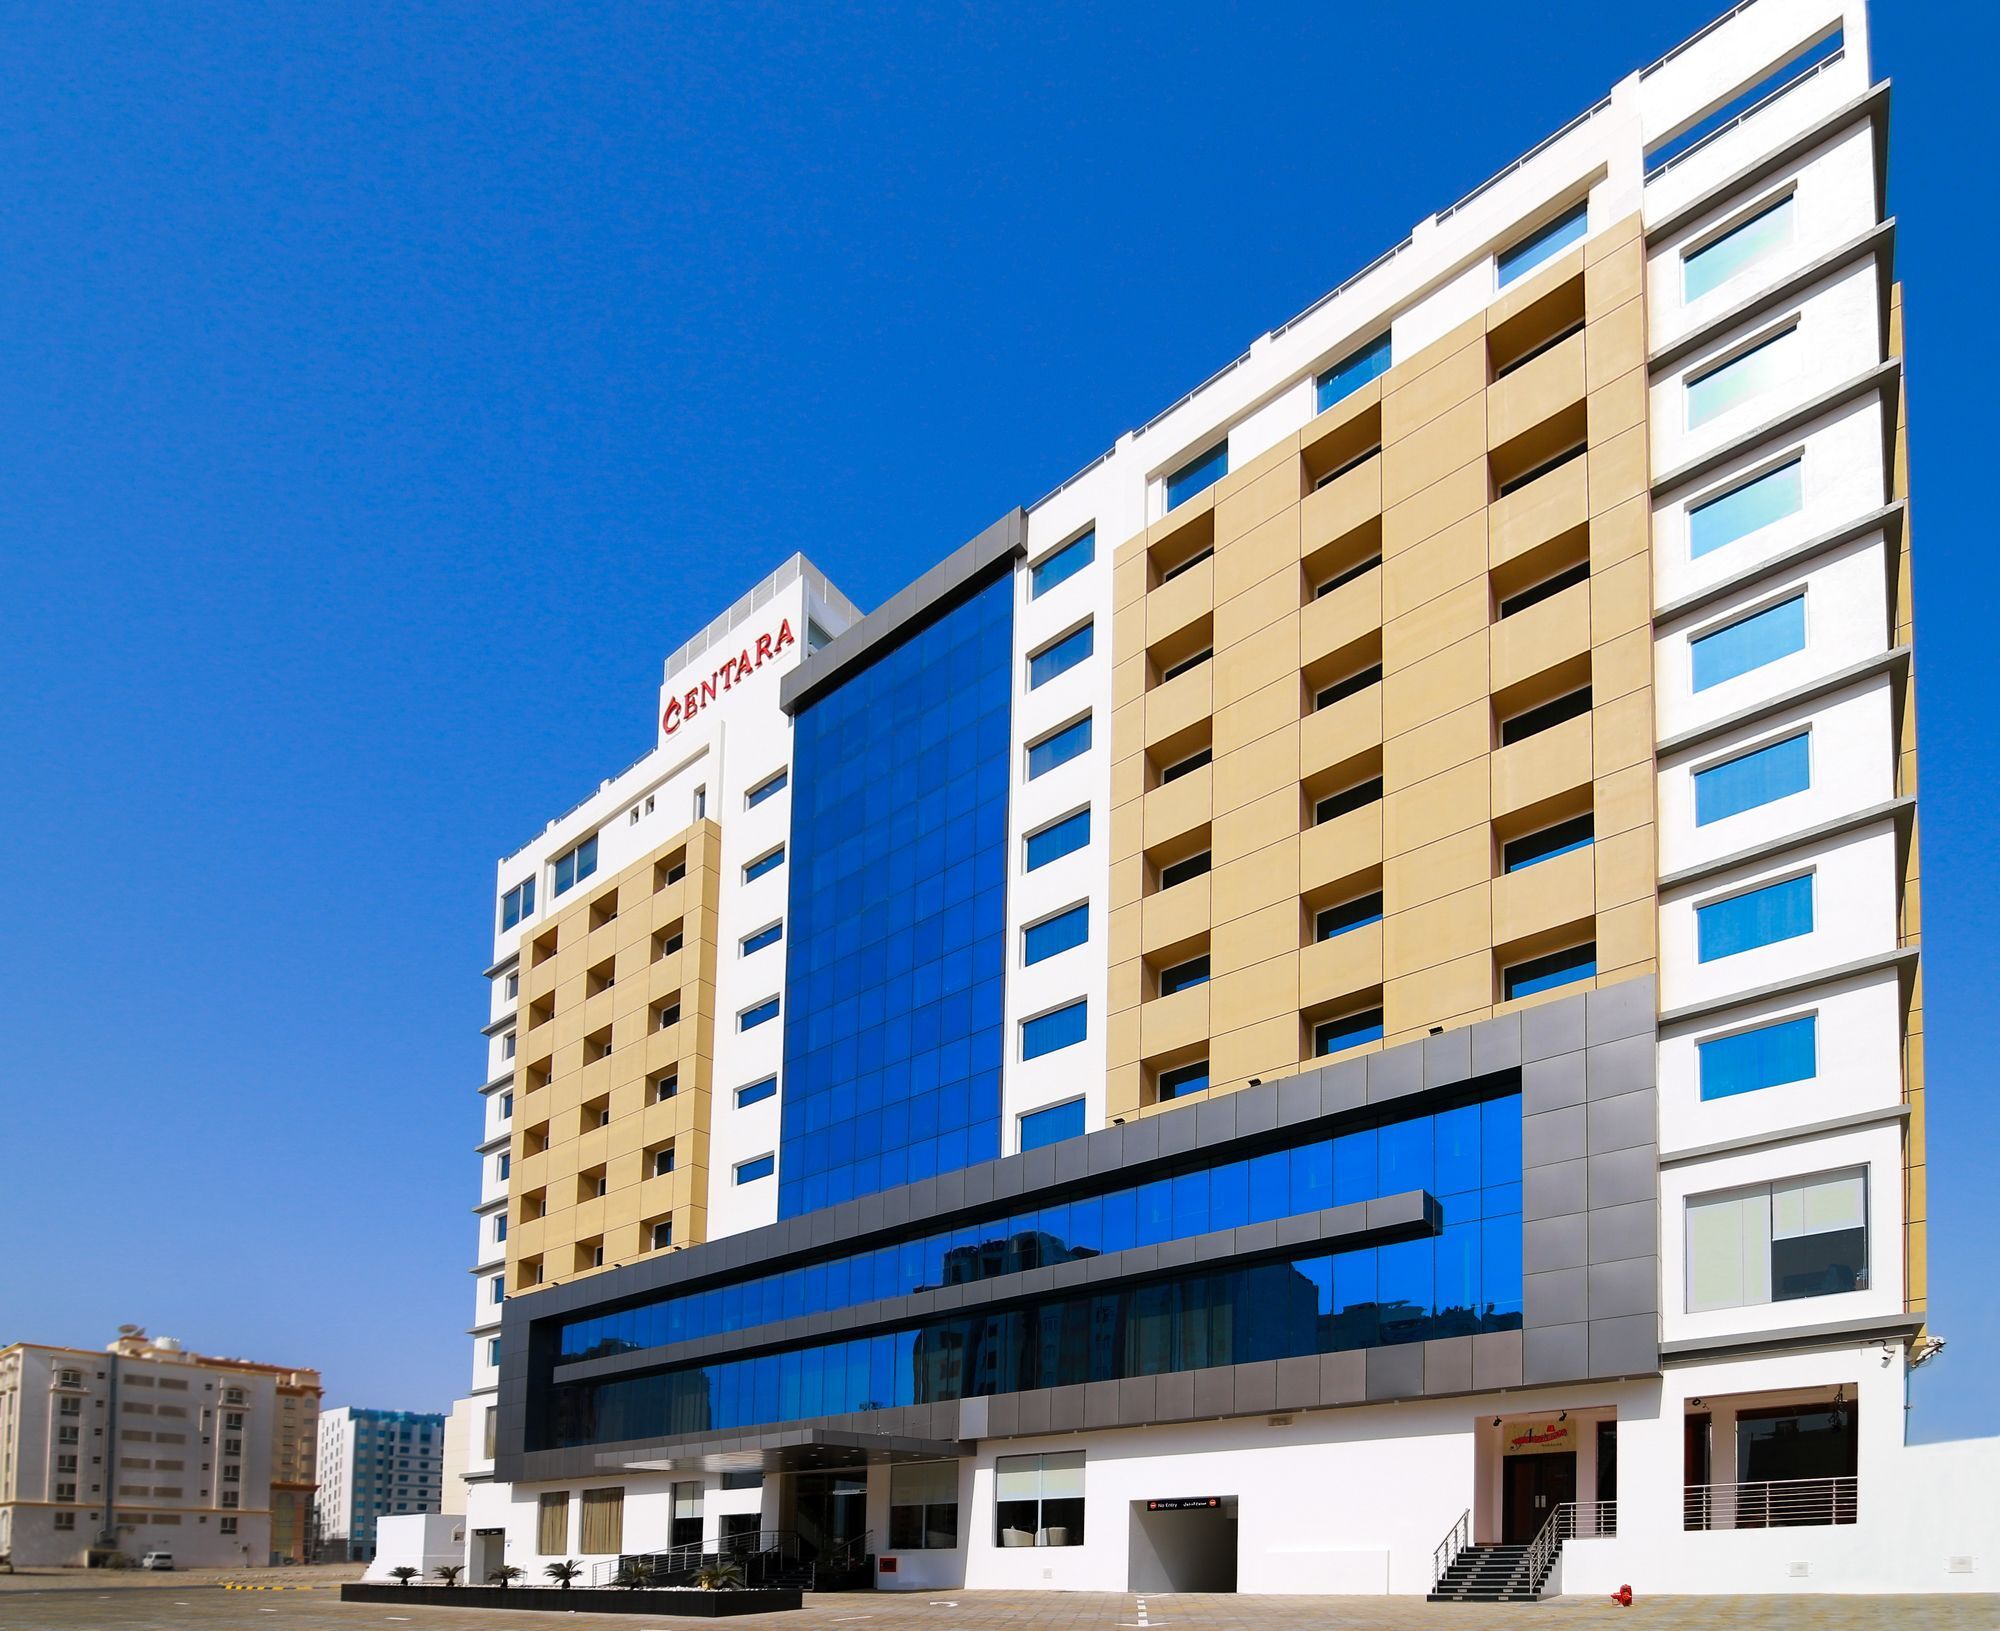 Centara Muscat Hotel Oman Exterior foto